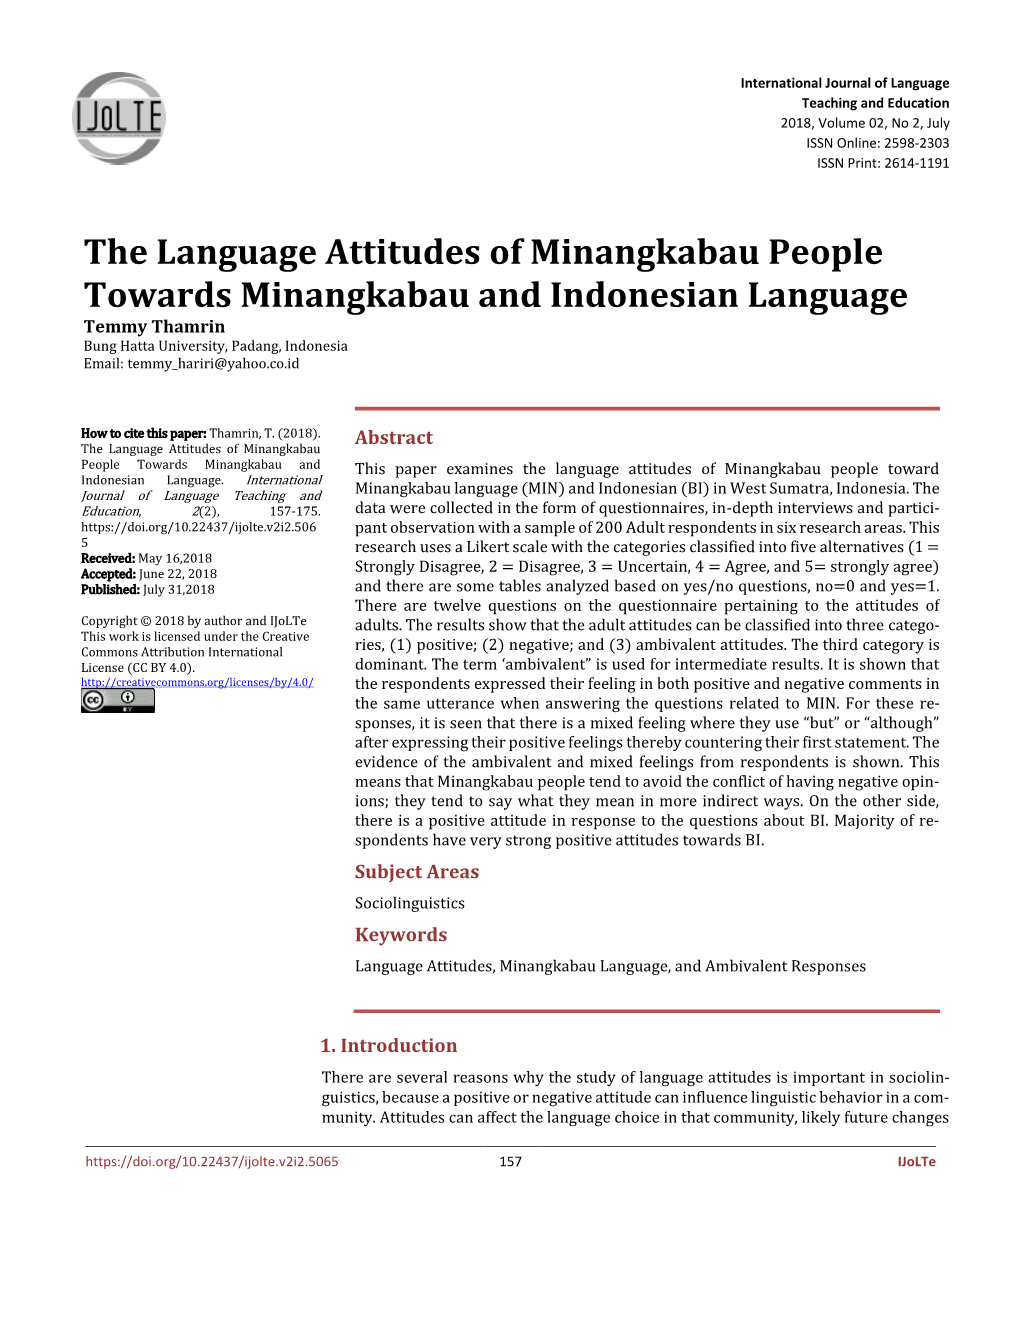 The Language Attitudes of Minangkabau People Towards